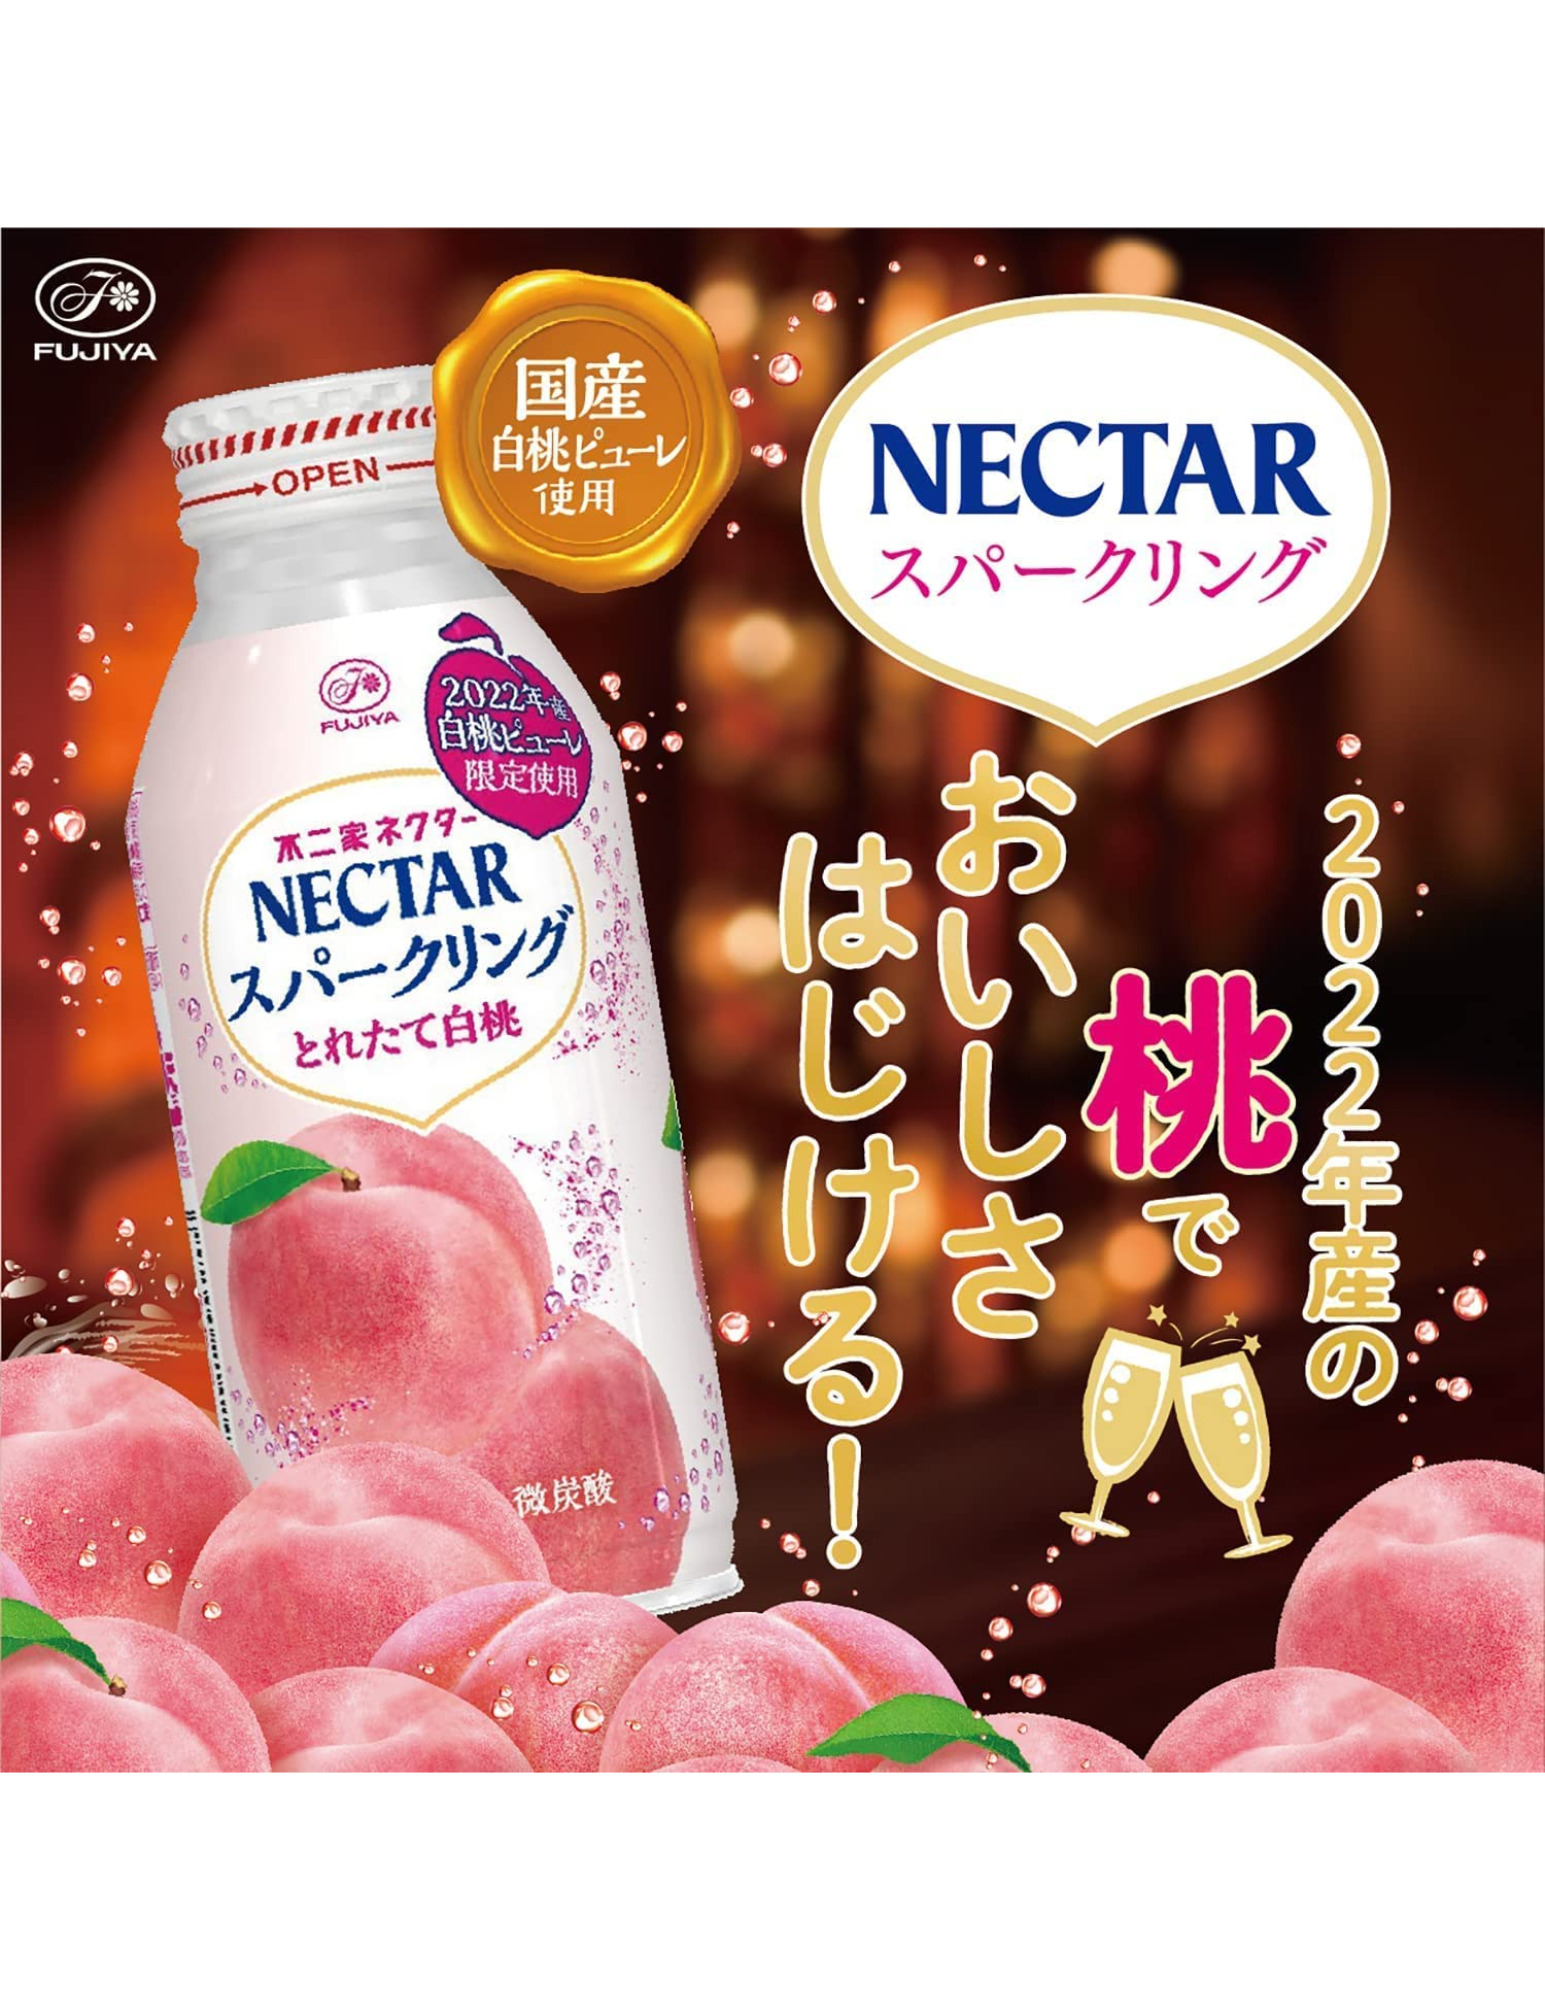 Fujiya Nectar Sparkling Peach Drink